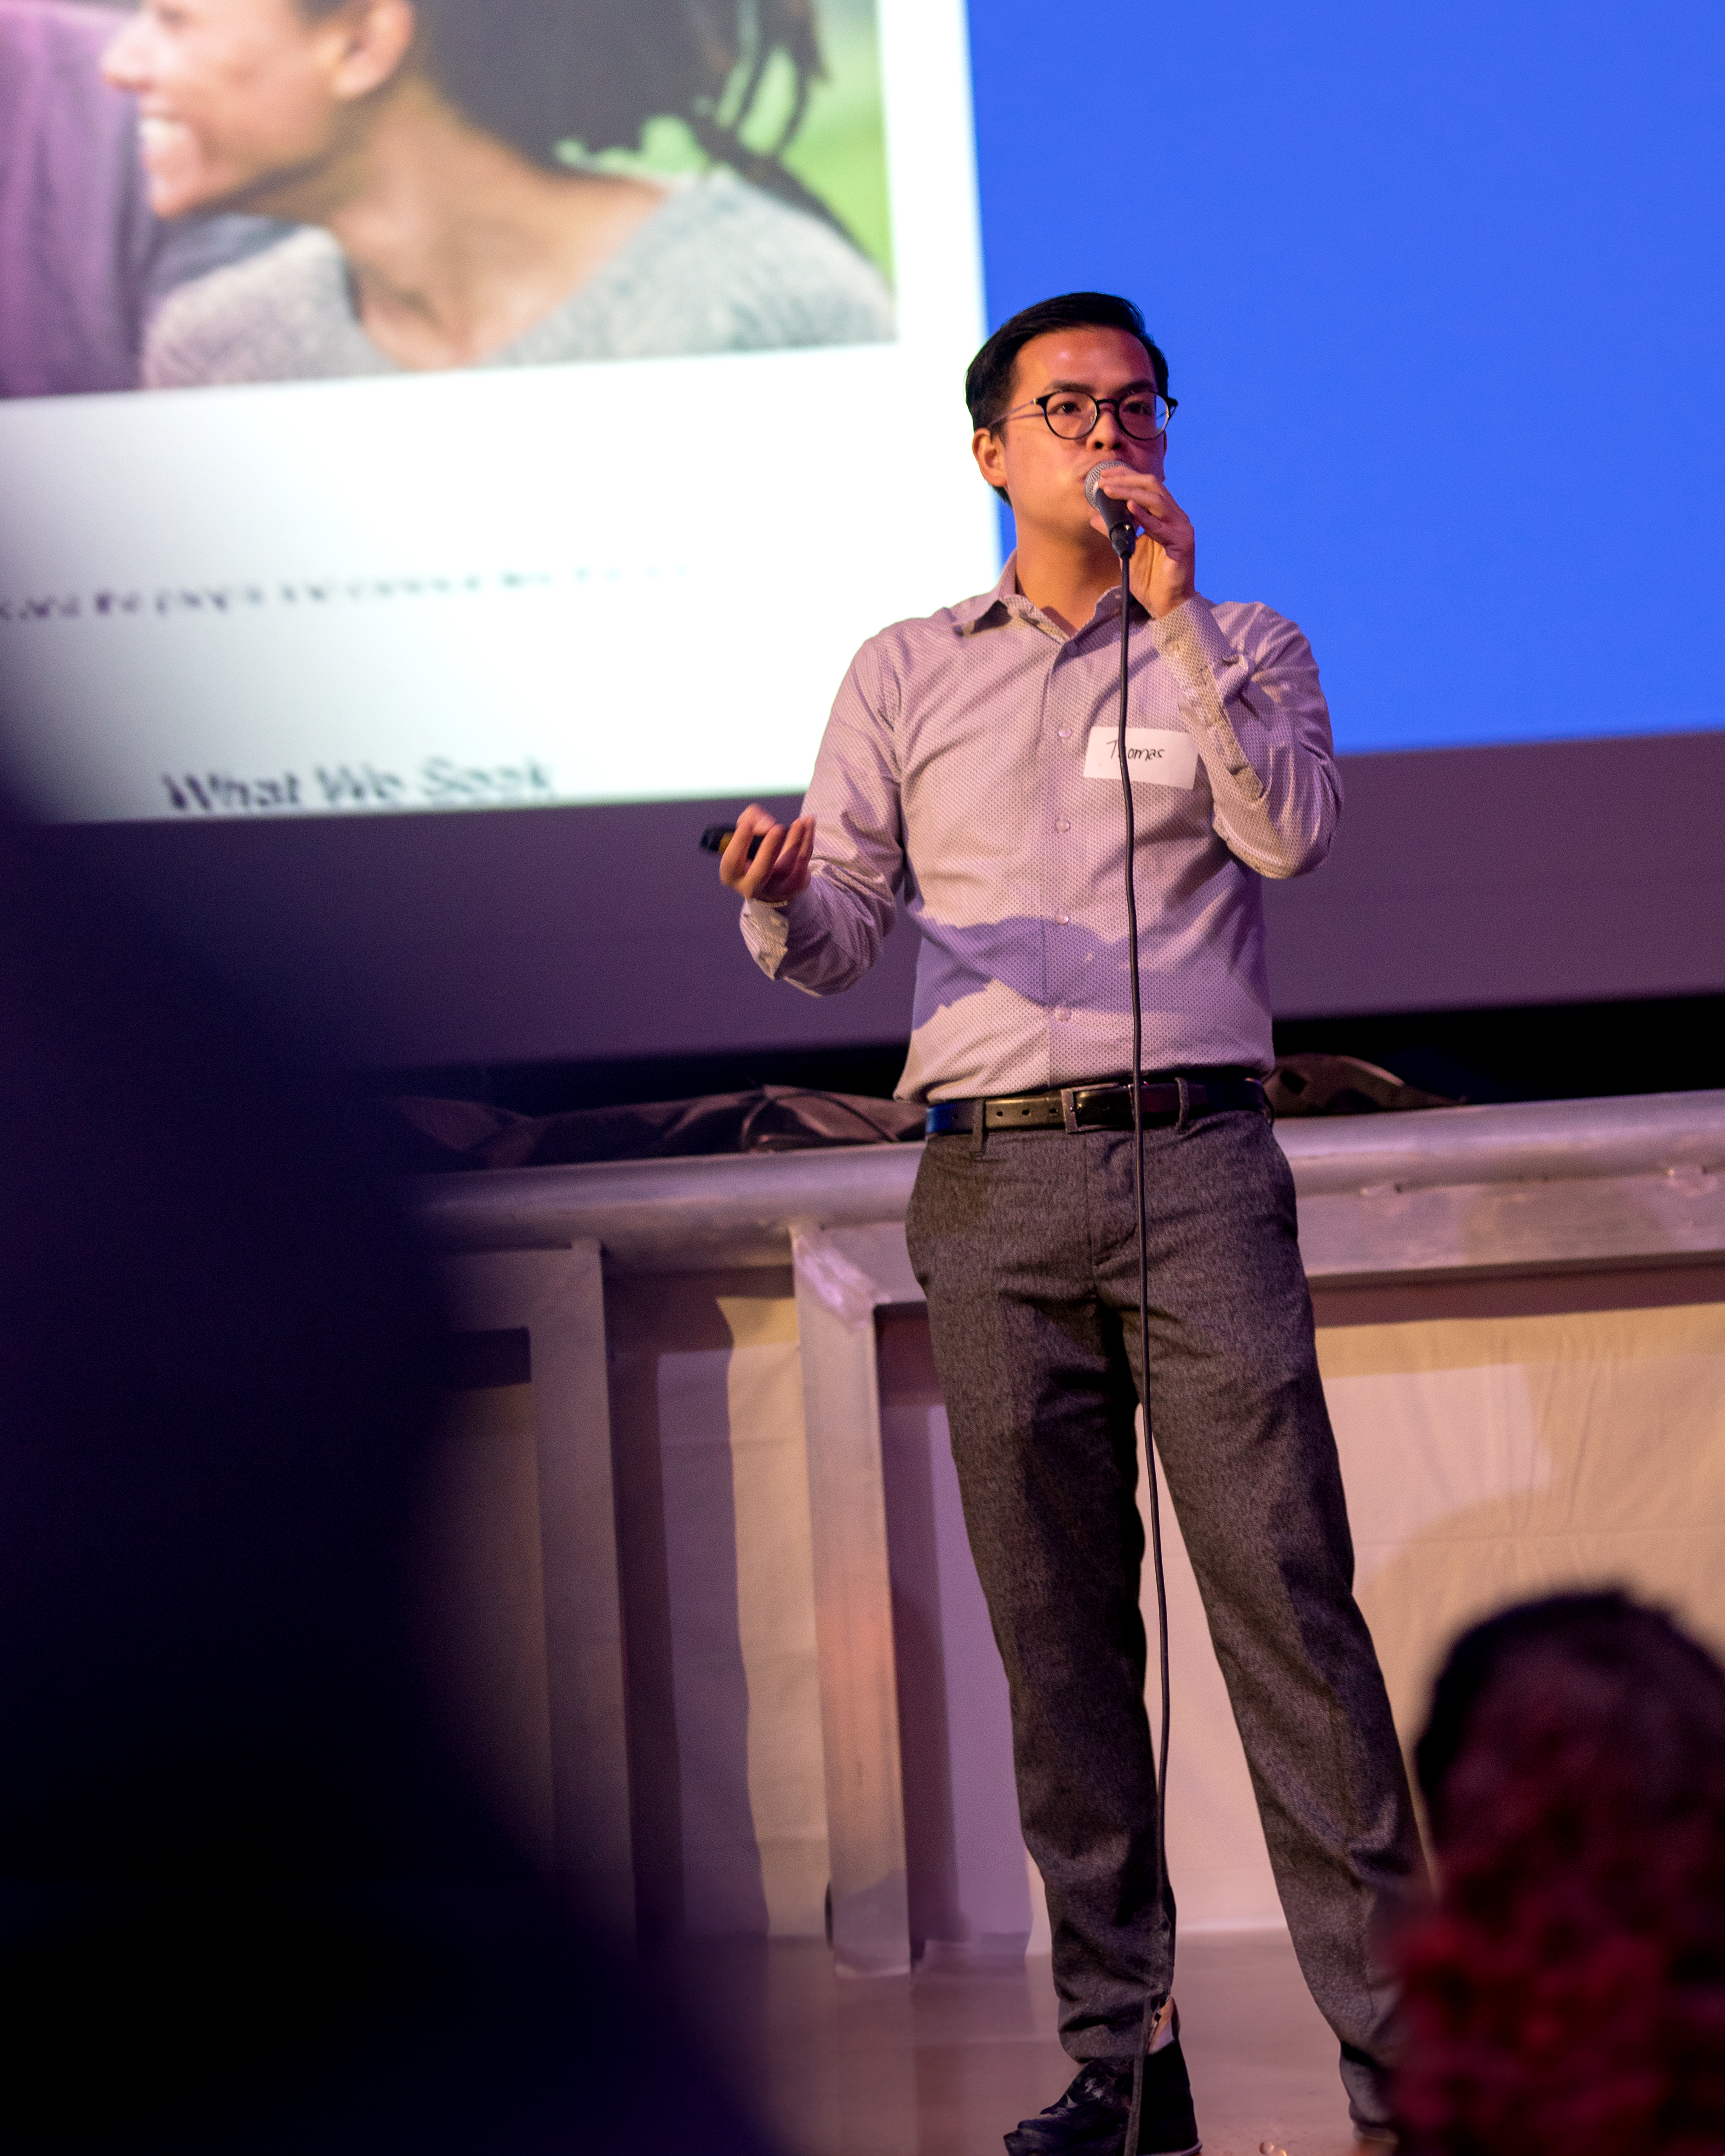 Thomas Li speaking at Facebook event